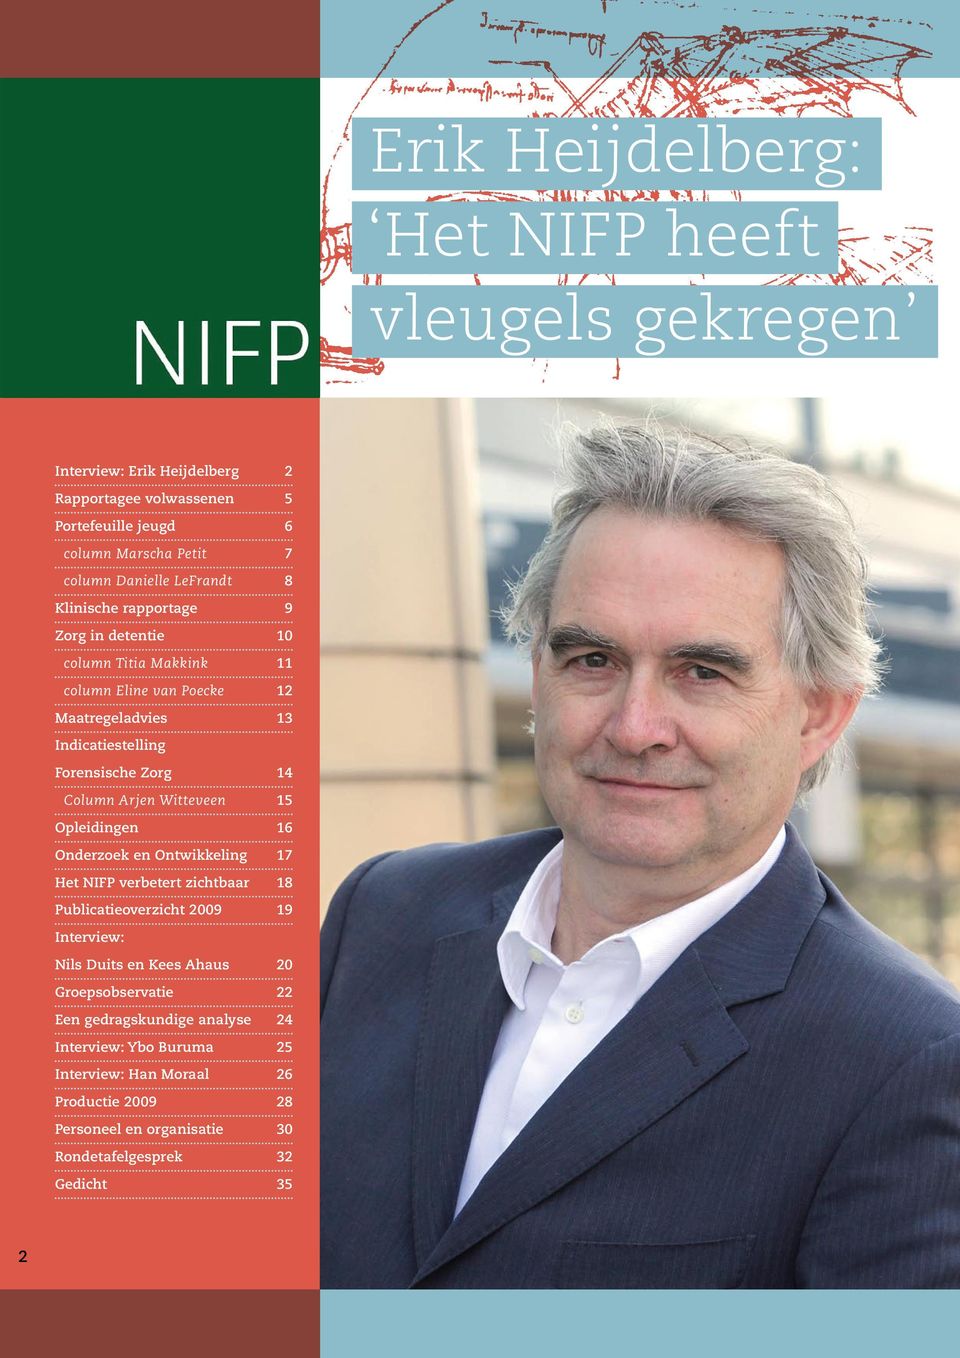 Arjen Witteveen Opleidingen Onderzoek en Ontwikkeling Het NIFP verbetert zichtbaar Publicatieoverzicht 2009 14 15 16 17 18 19 Interview: Nils Duits en Kees Ahaus